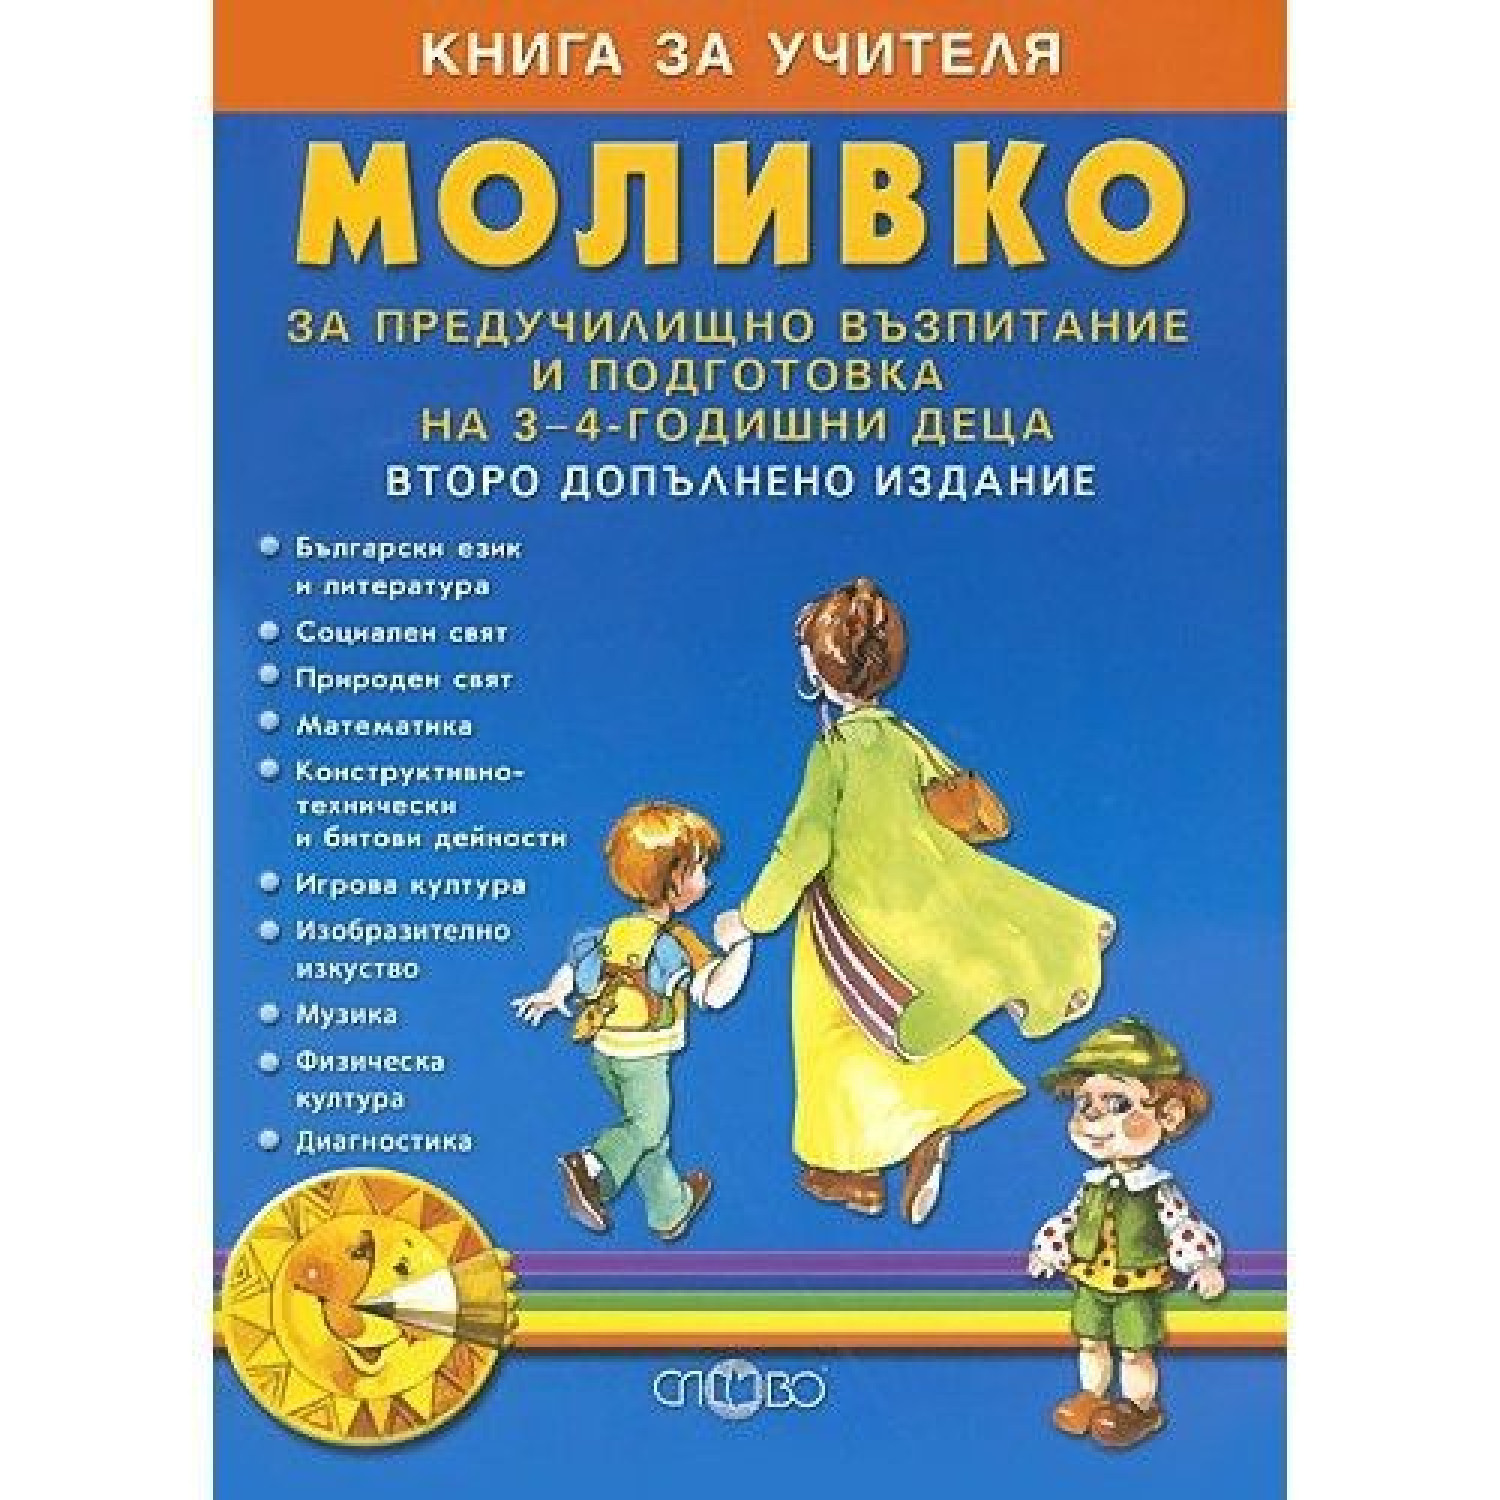 Моливко - Книга за учителя. За предучилищно възпитание, второ допълнение 3-4 г.